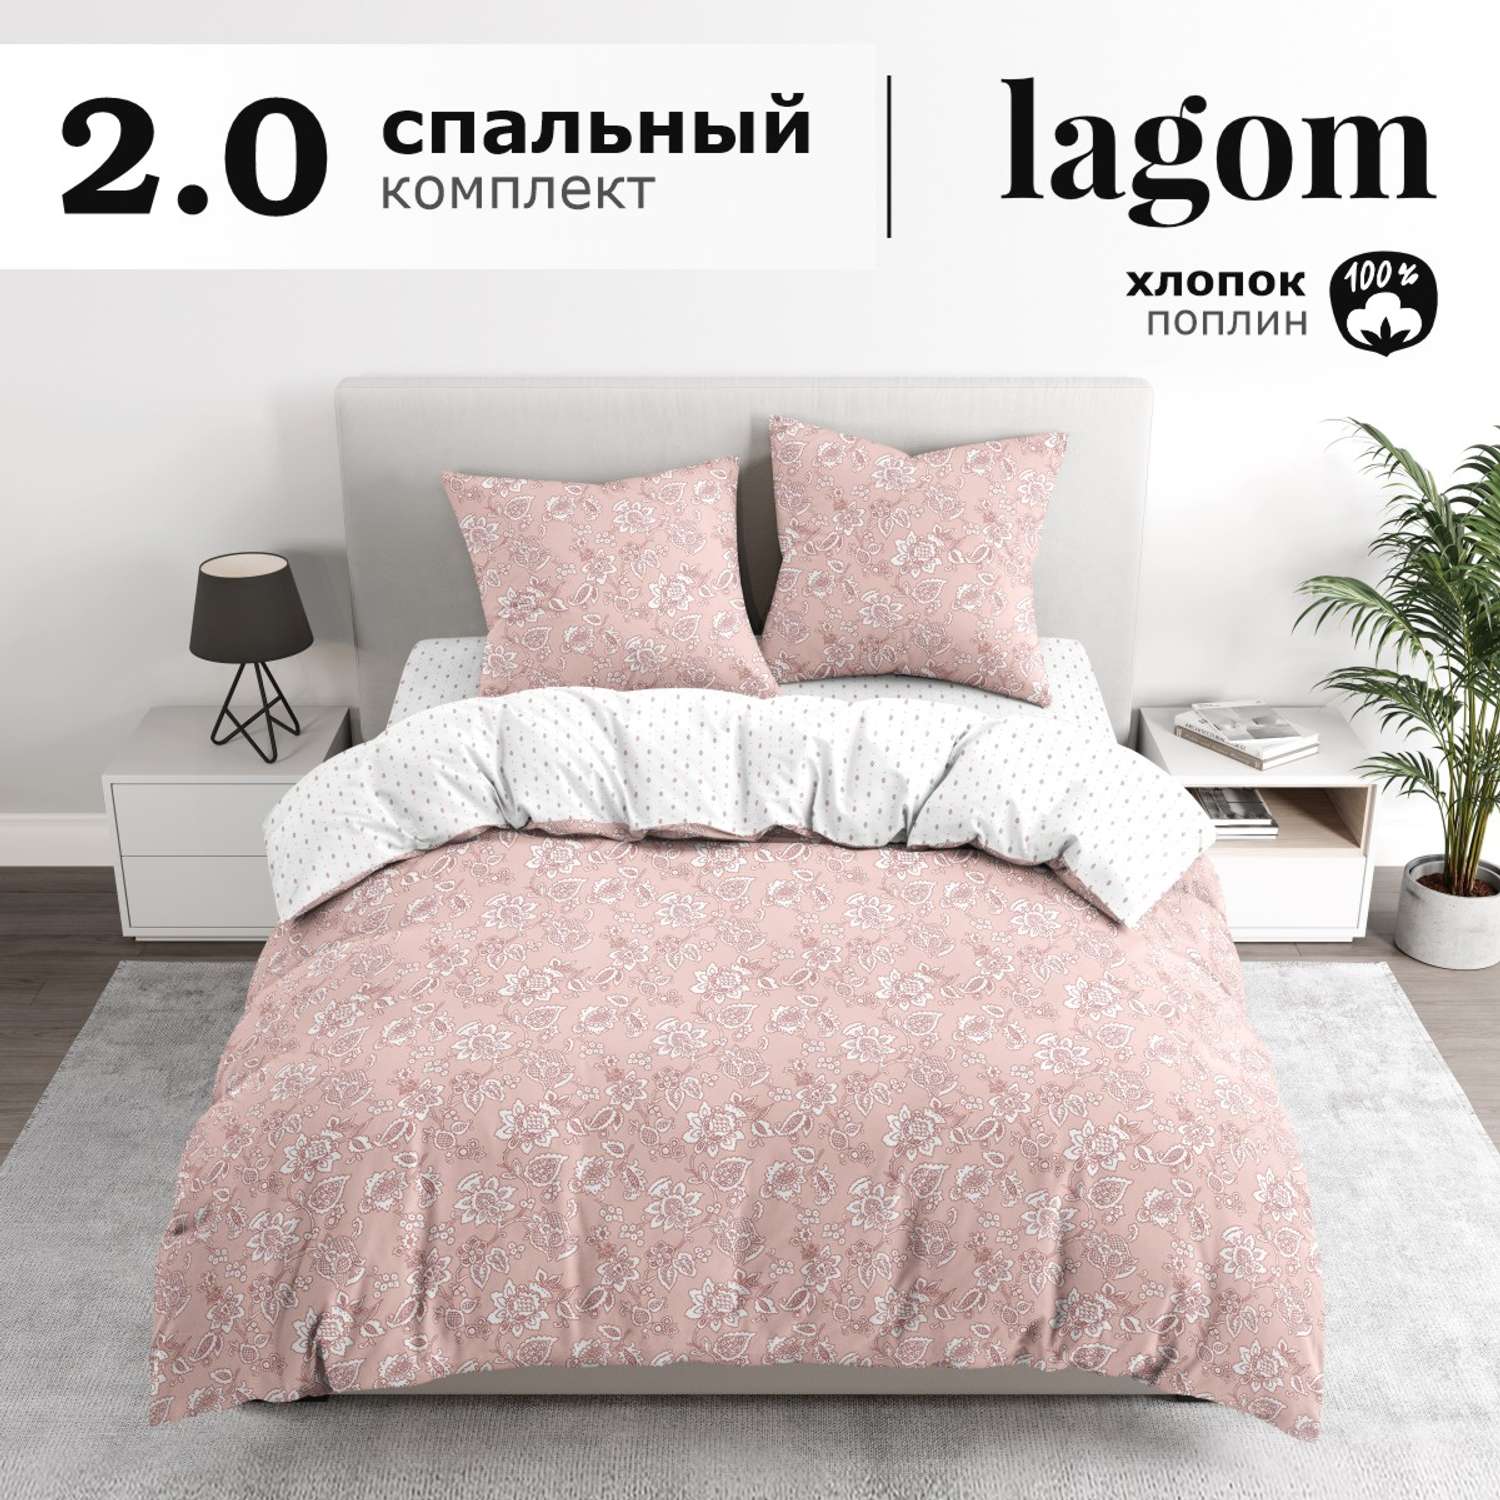 Комплект постельного белья lagom Лулео 2-спальный макси наволочки 70х70 рис.5977-1+5977а-1 - фото 1